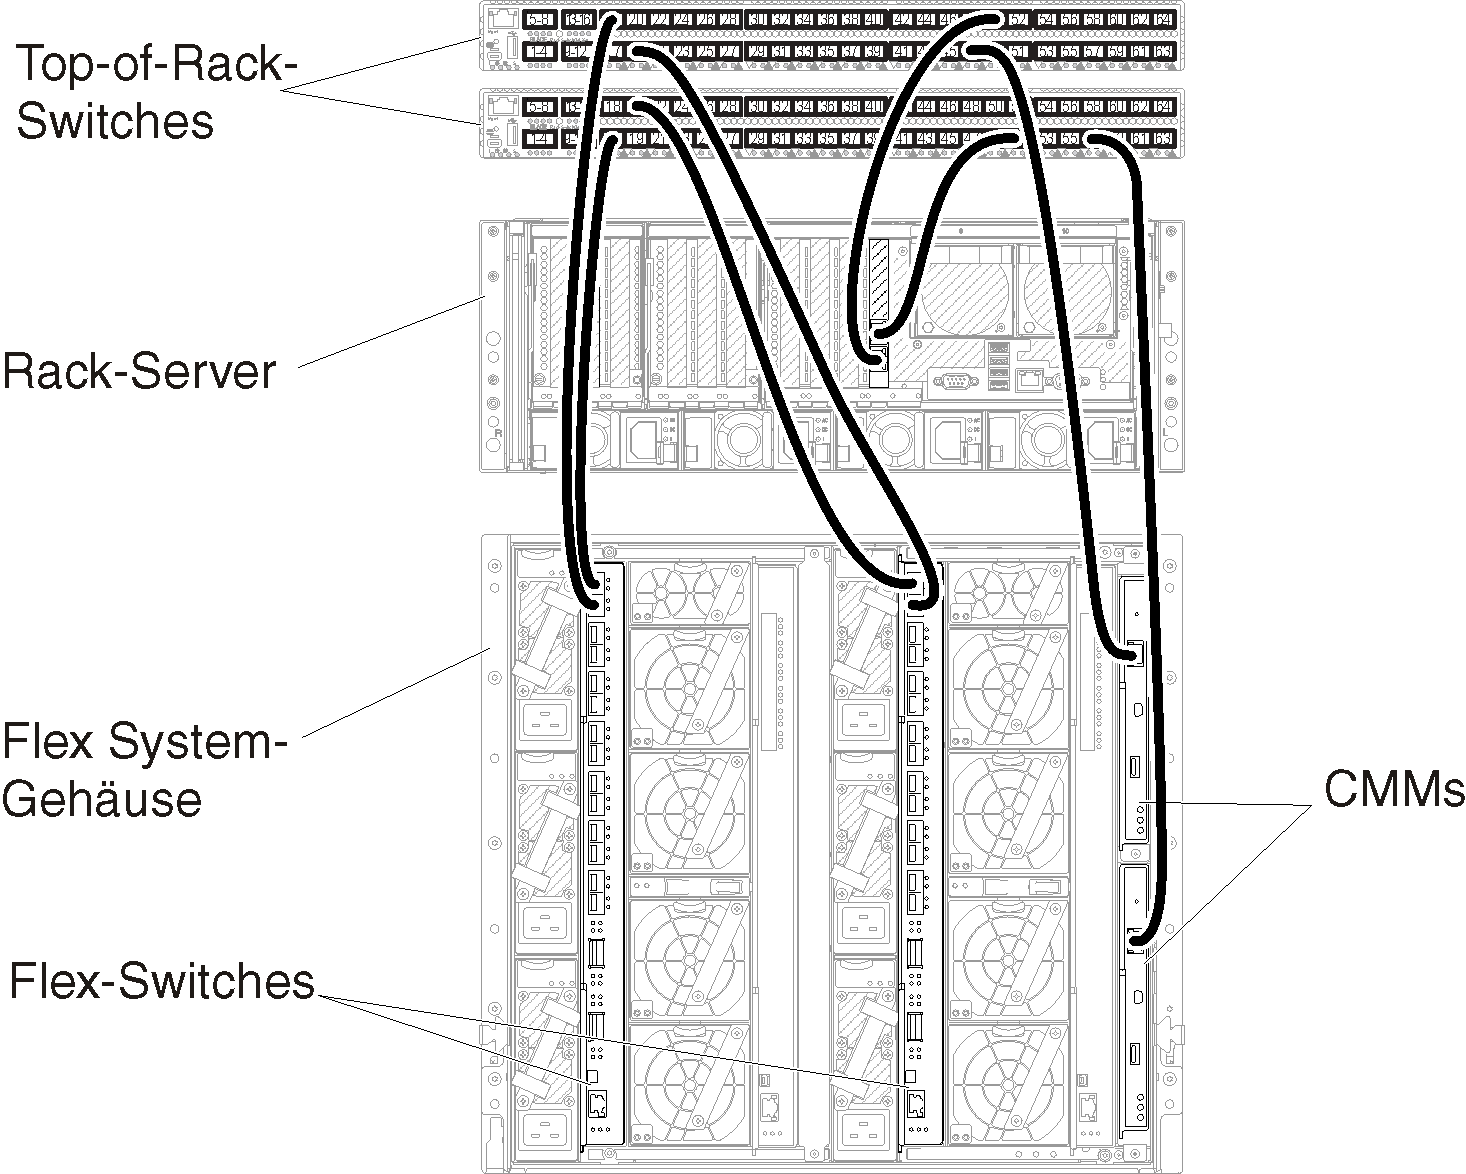 Zeigt die Verkabelung des Gehäuses und der Rack-Server zu den Top-of-Rack-Switches für Verwaltungsnetzwerke und Netzwerke mit virtuell getrennten Daten.